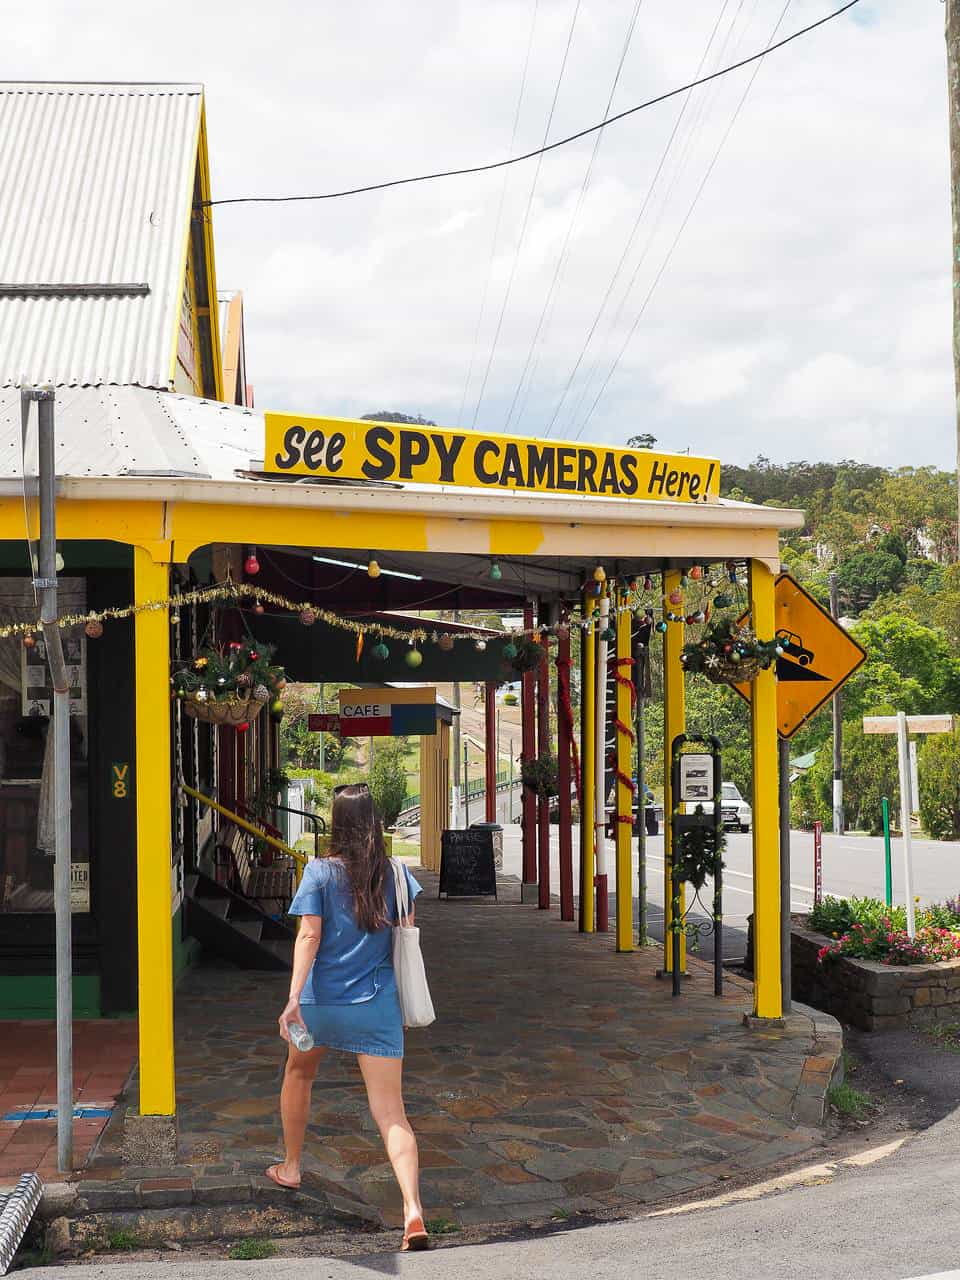 Herberton Spy Camera shop in the Atherton Tablelands, North Queensland // TravelMermaid.com